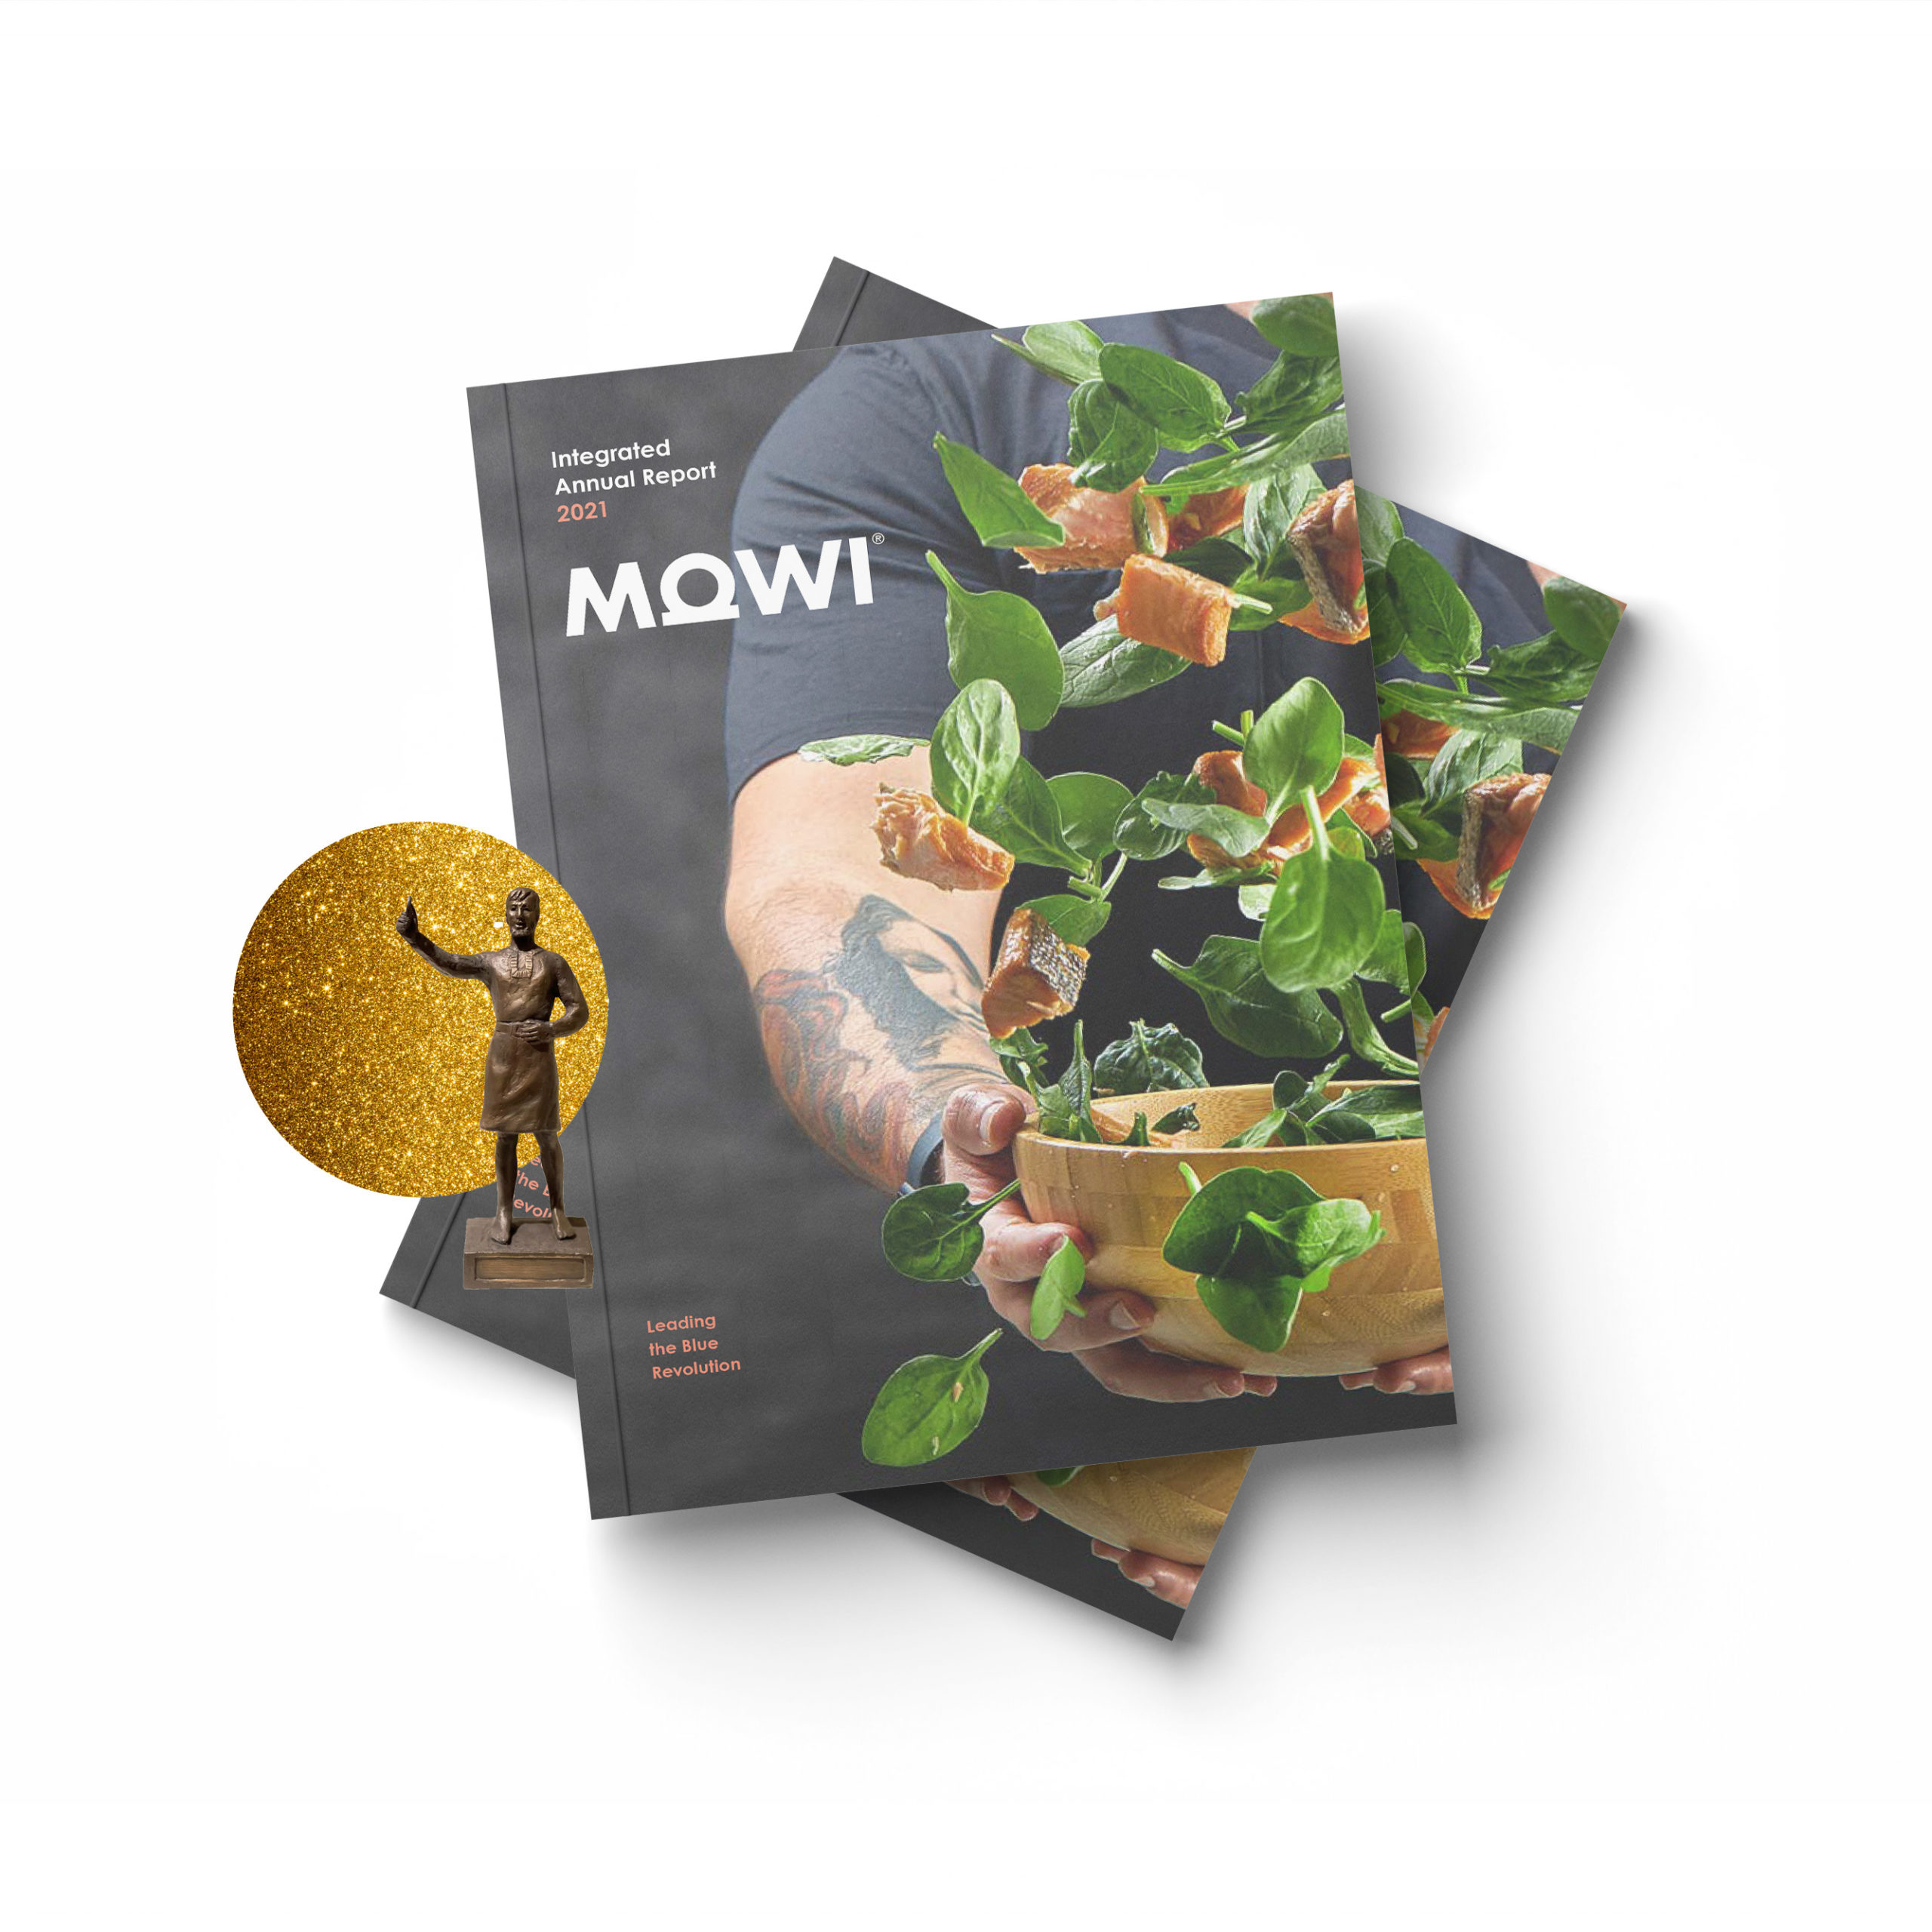 Mockup av årsrapport for Mowi, gullvinner av Farmandprisen